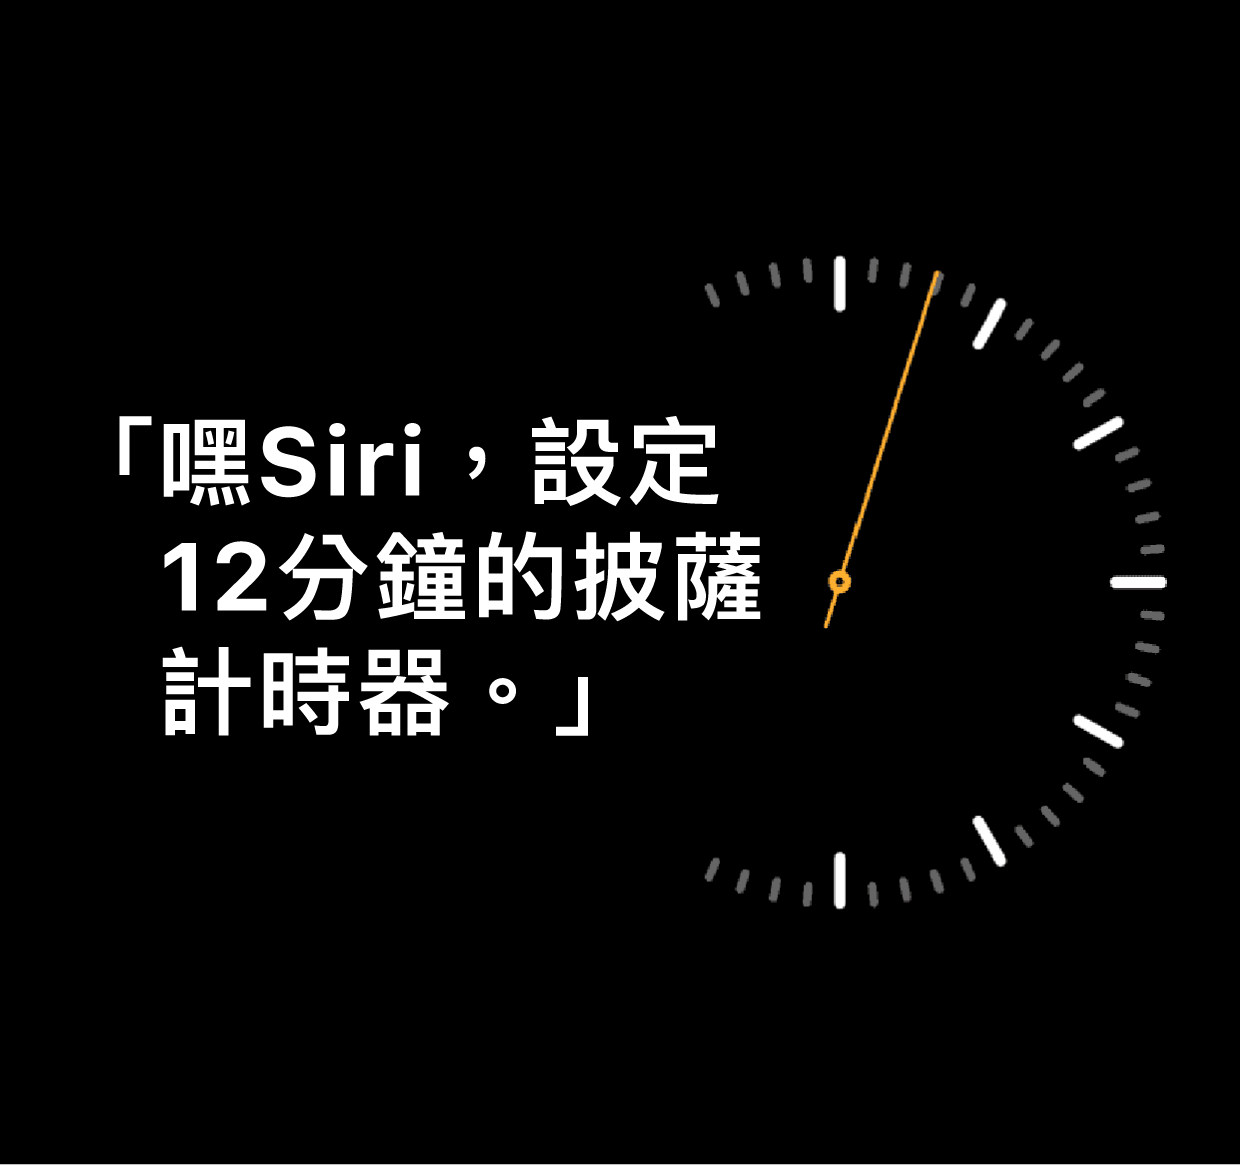 「嘿 Siri，設定 12 分鐘的披薩計時器」字樣插圖